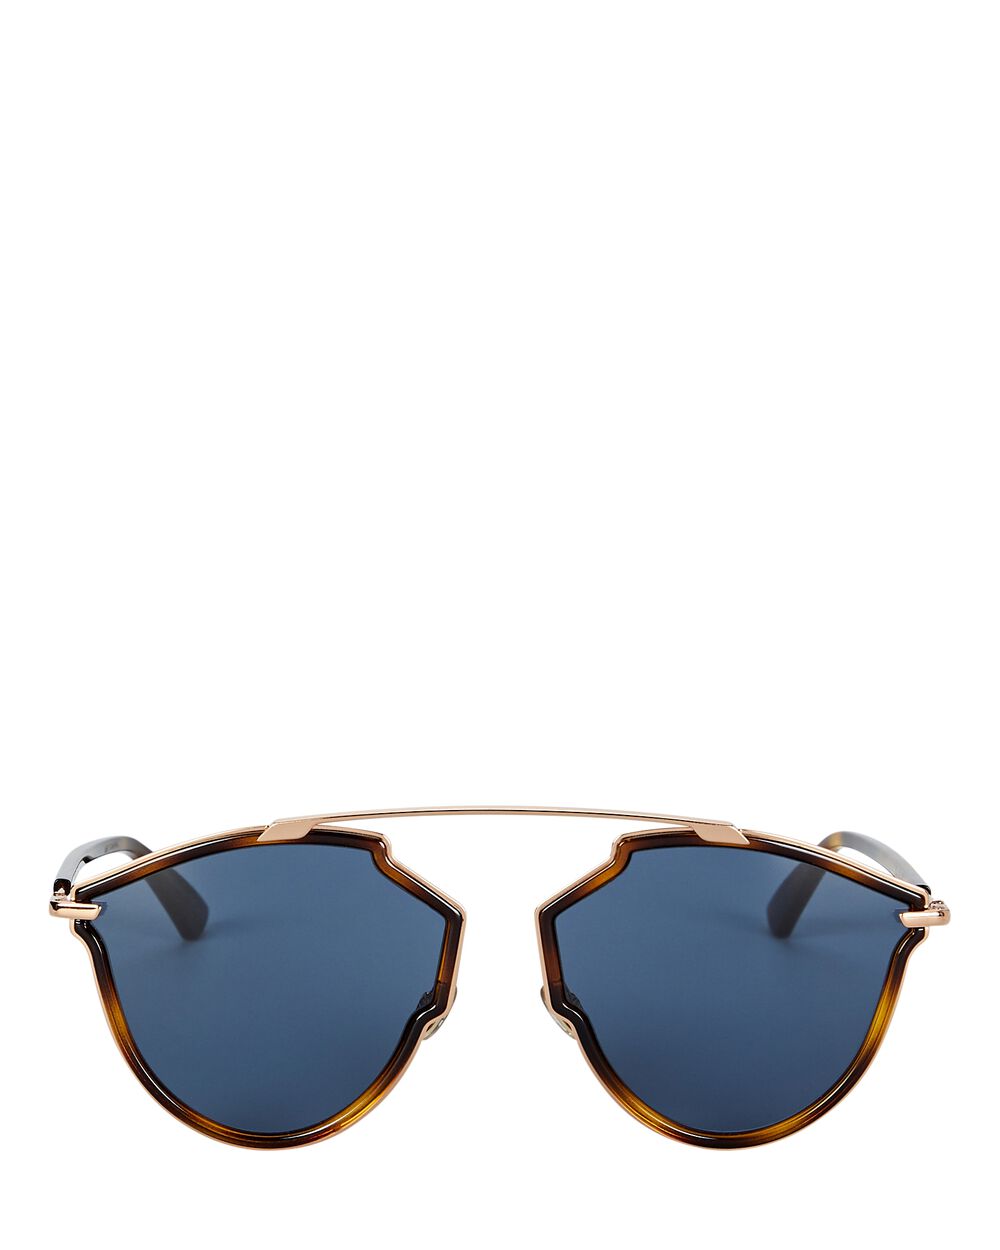 Dior DiorSoReal Sunglasses